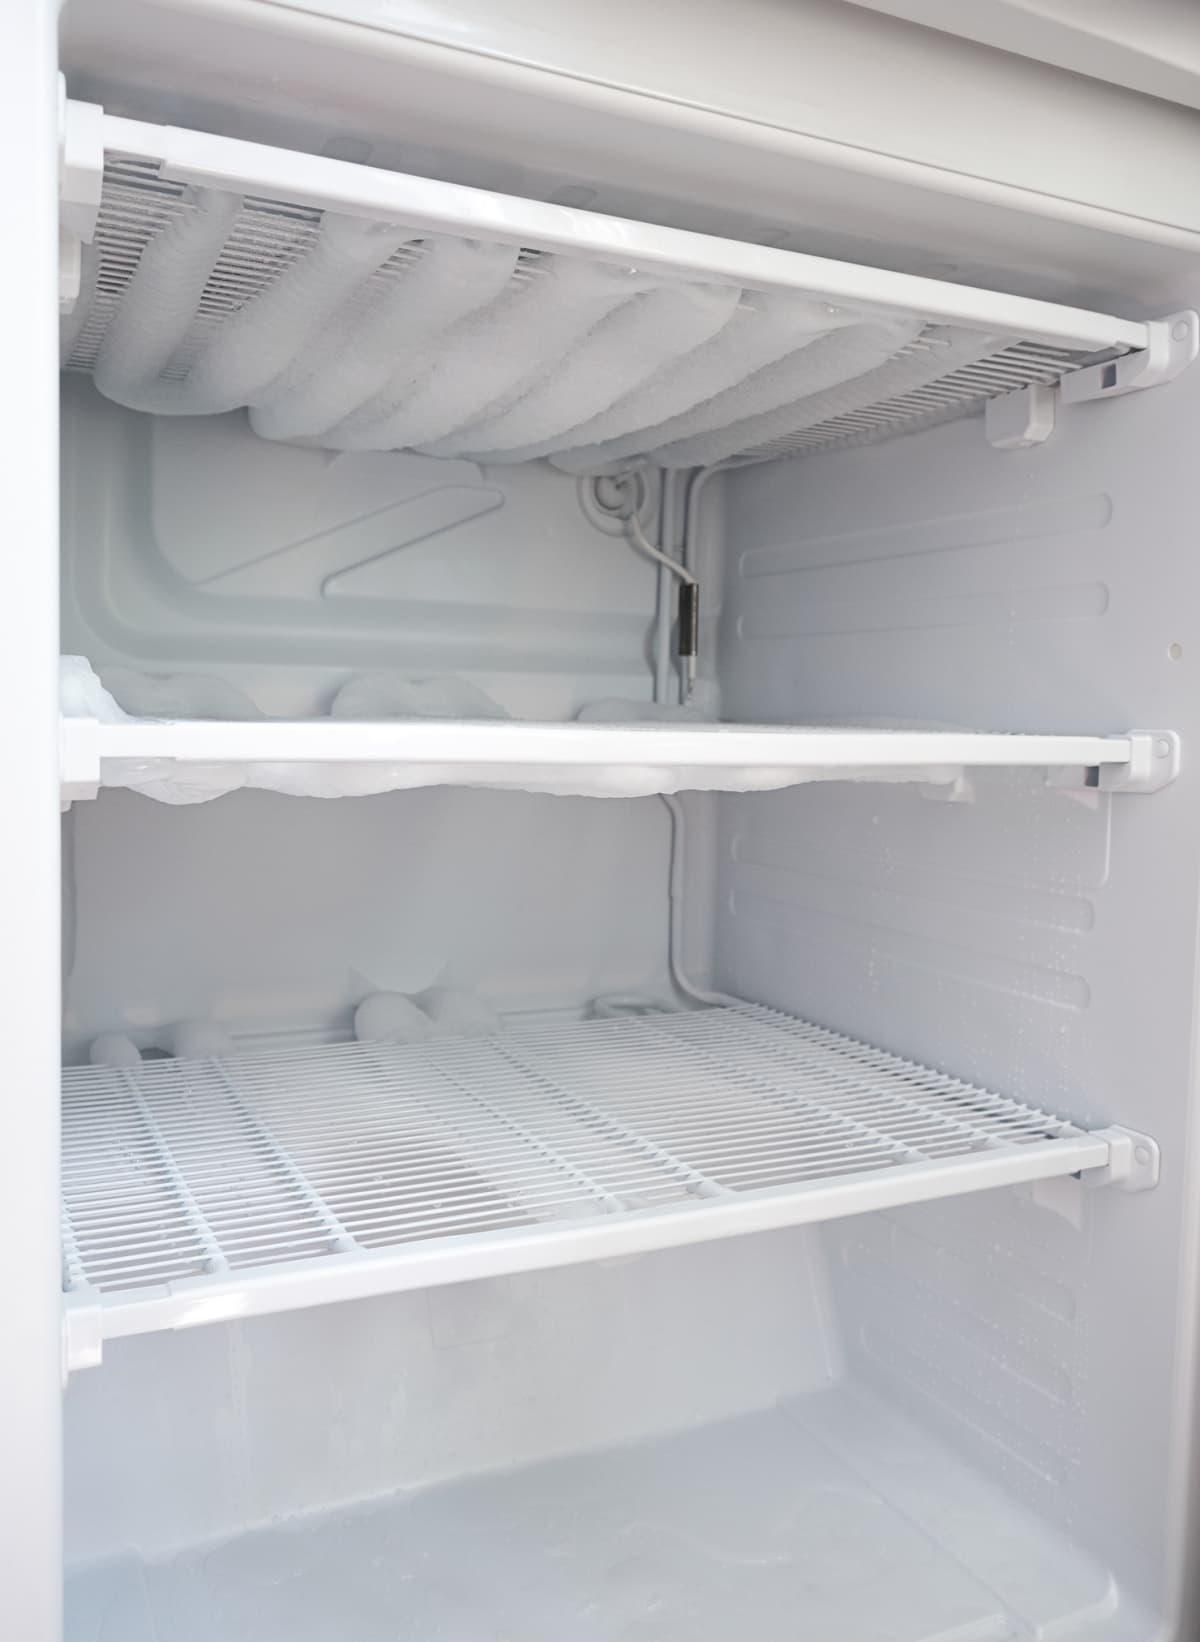 The inside of an empty fridge